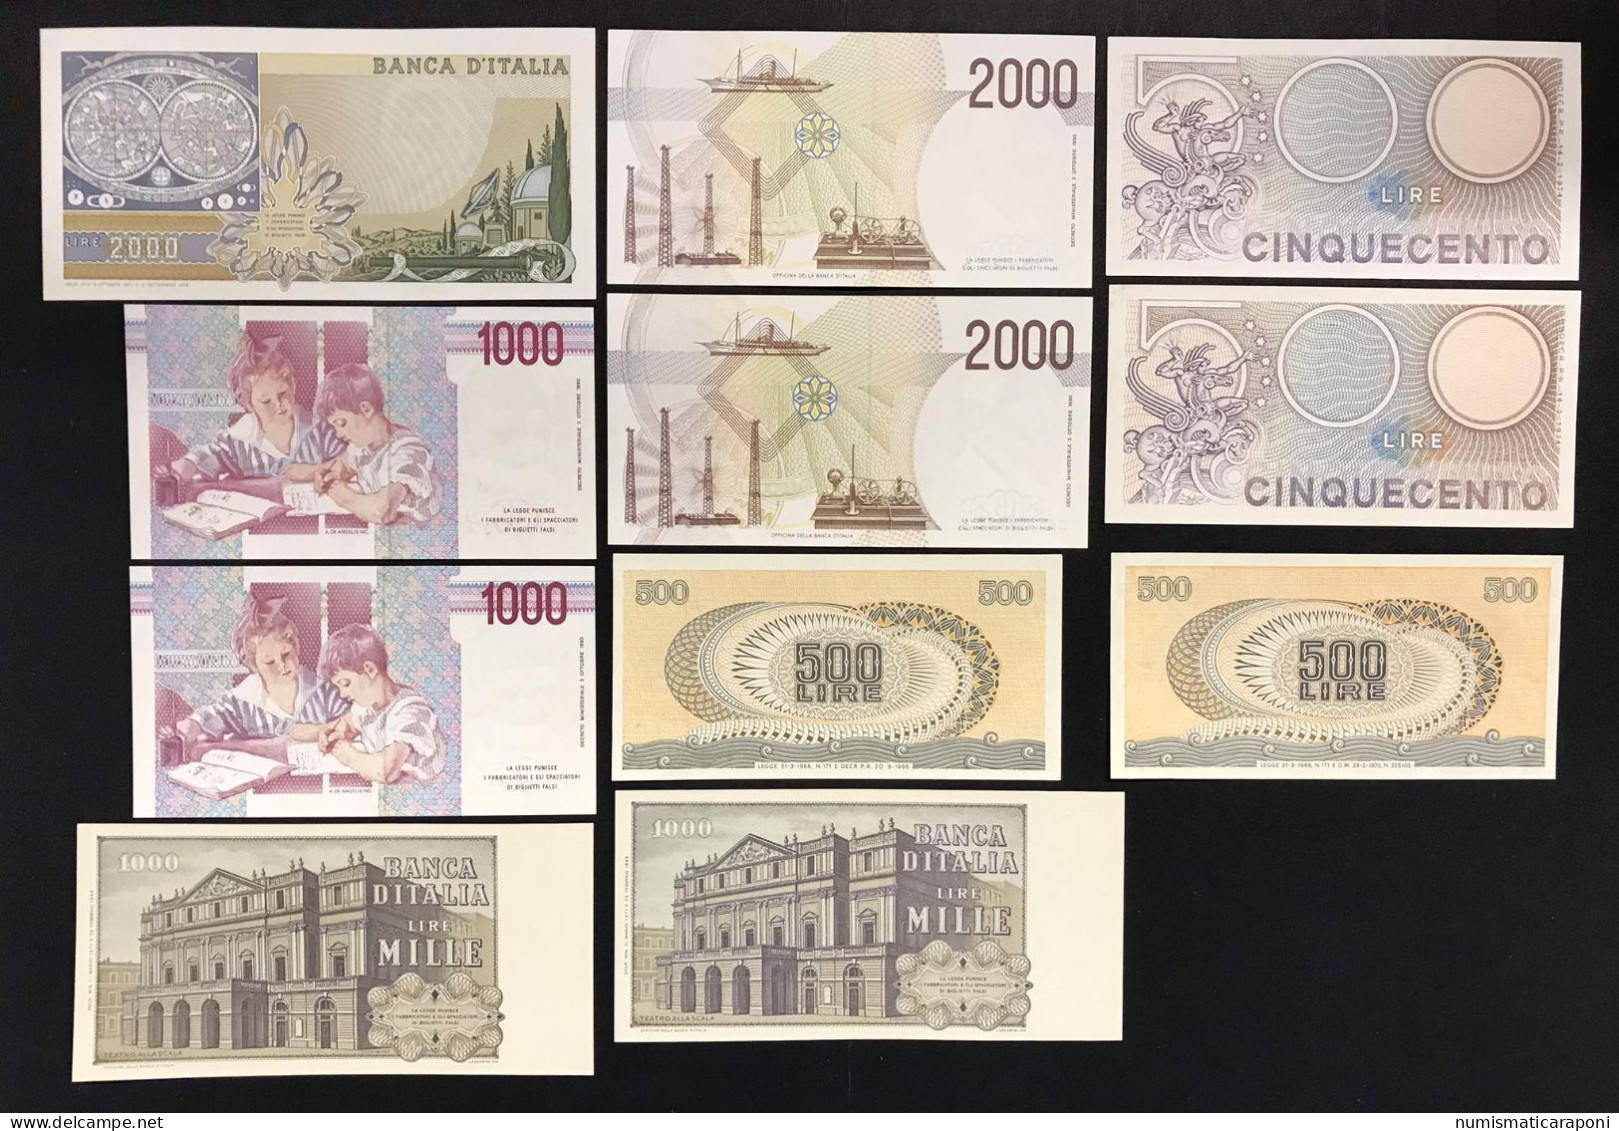 Italy Italia Regno/repubblica 19 Banconote 19 Notes Bb/q.fds Lotto.3423 - [ 9] Sammlungen